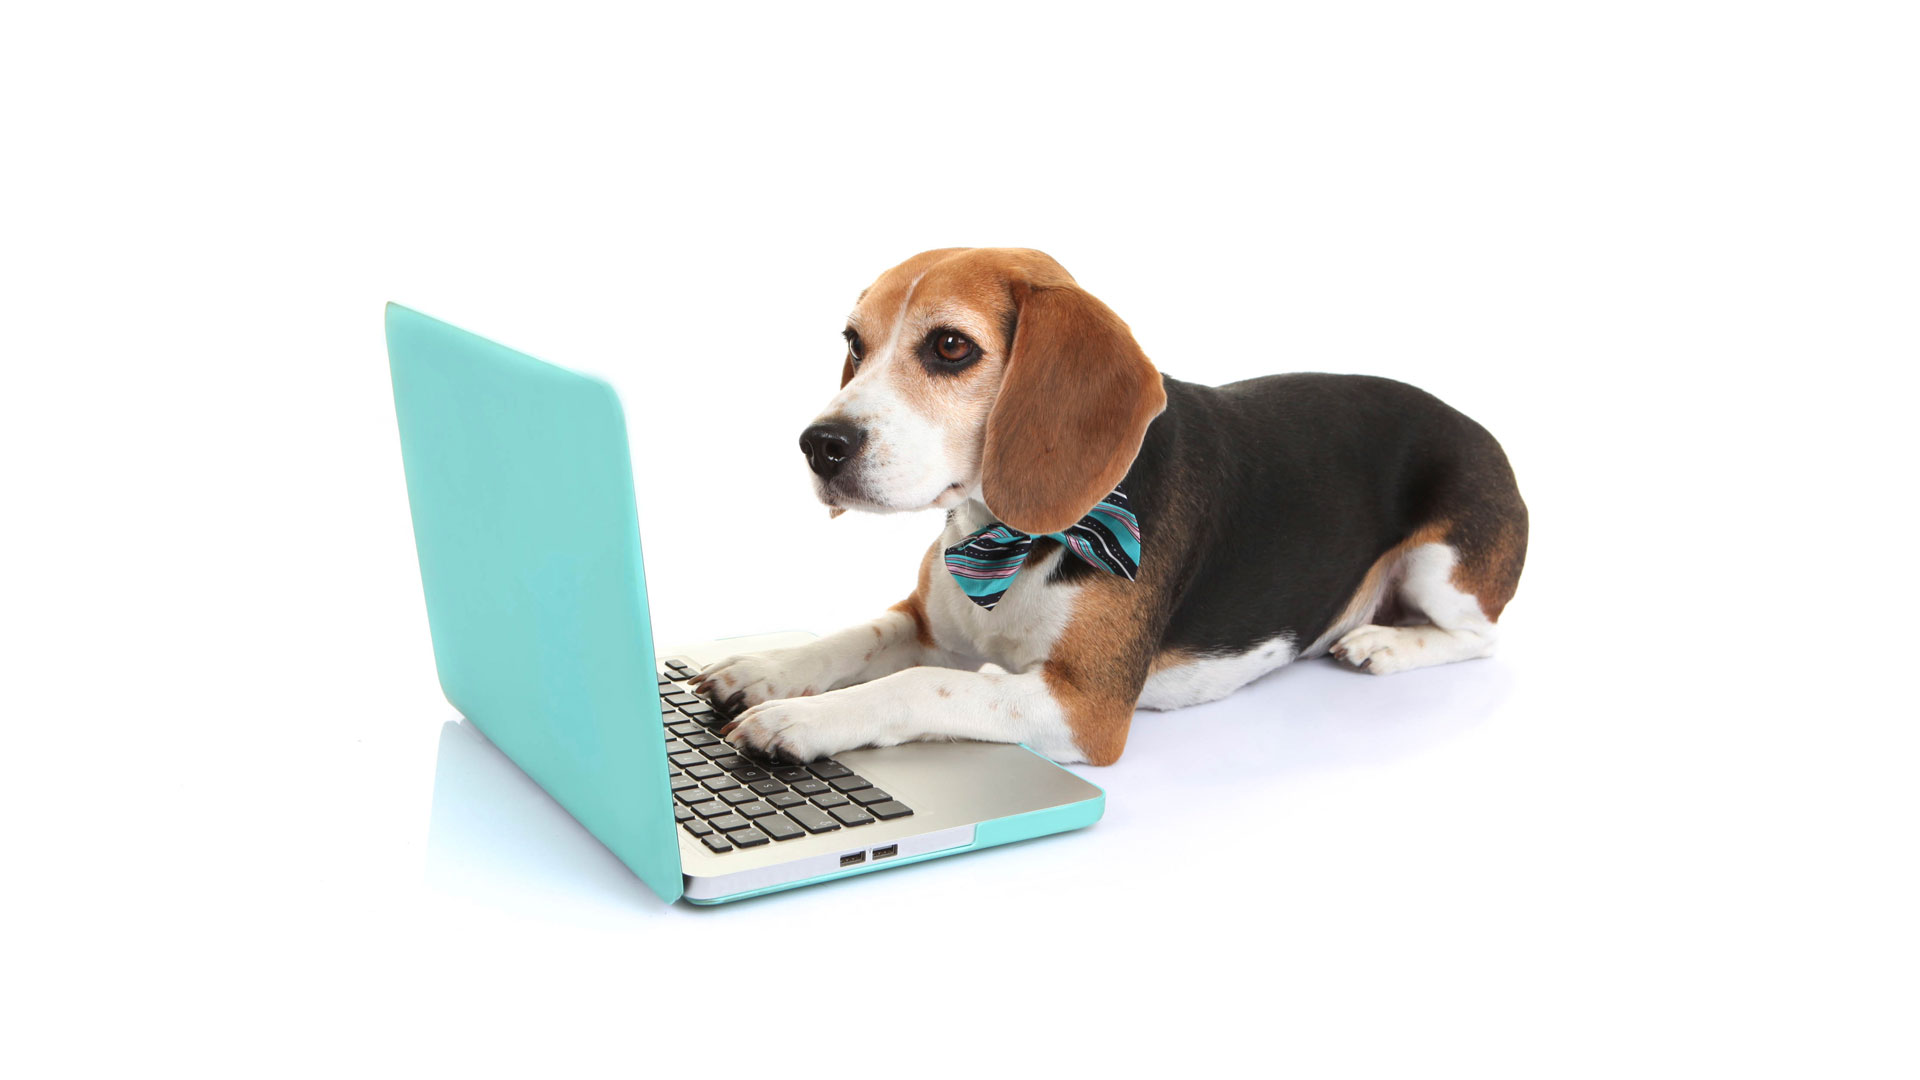 En Doggiesmatch encontrarás variada información, desde consejos de veterinarios hasta tips de cuidado para tu mascota